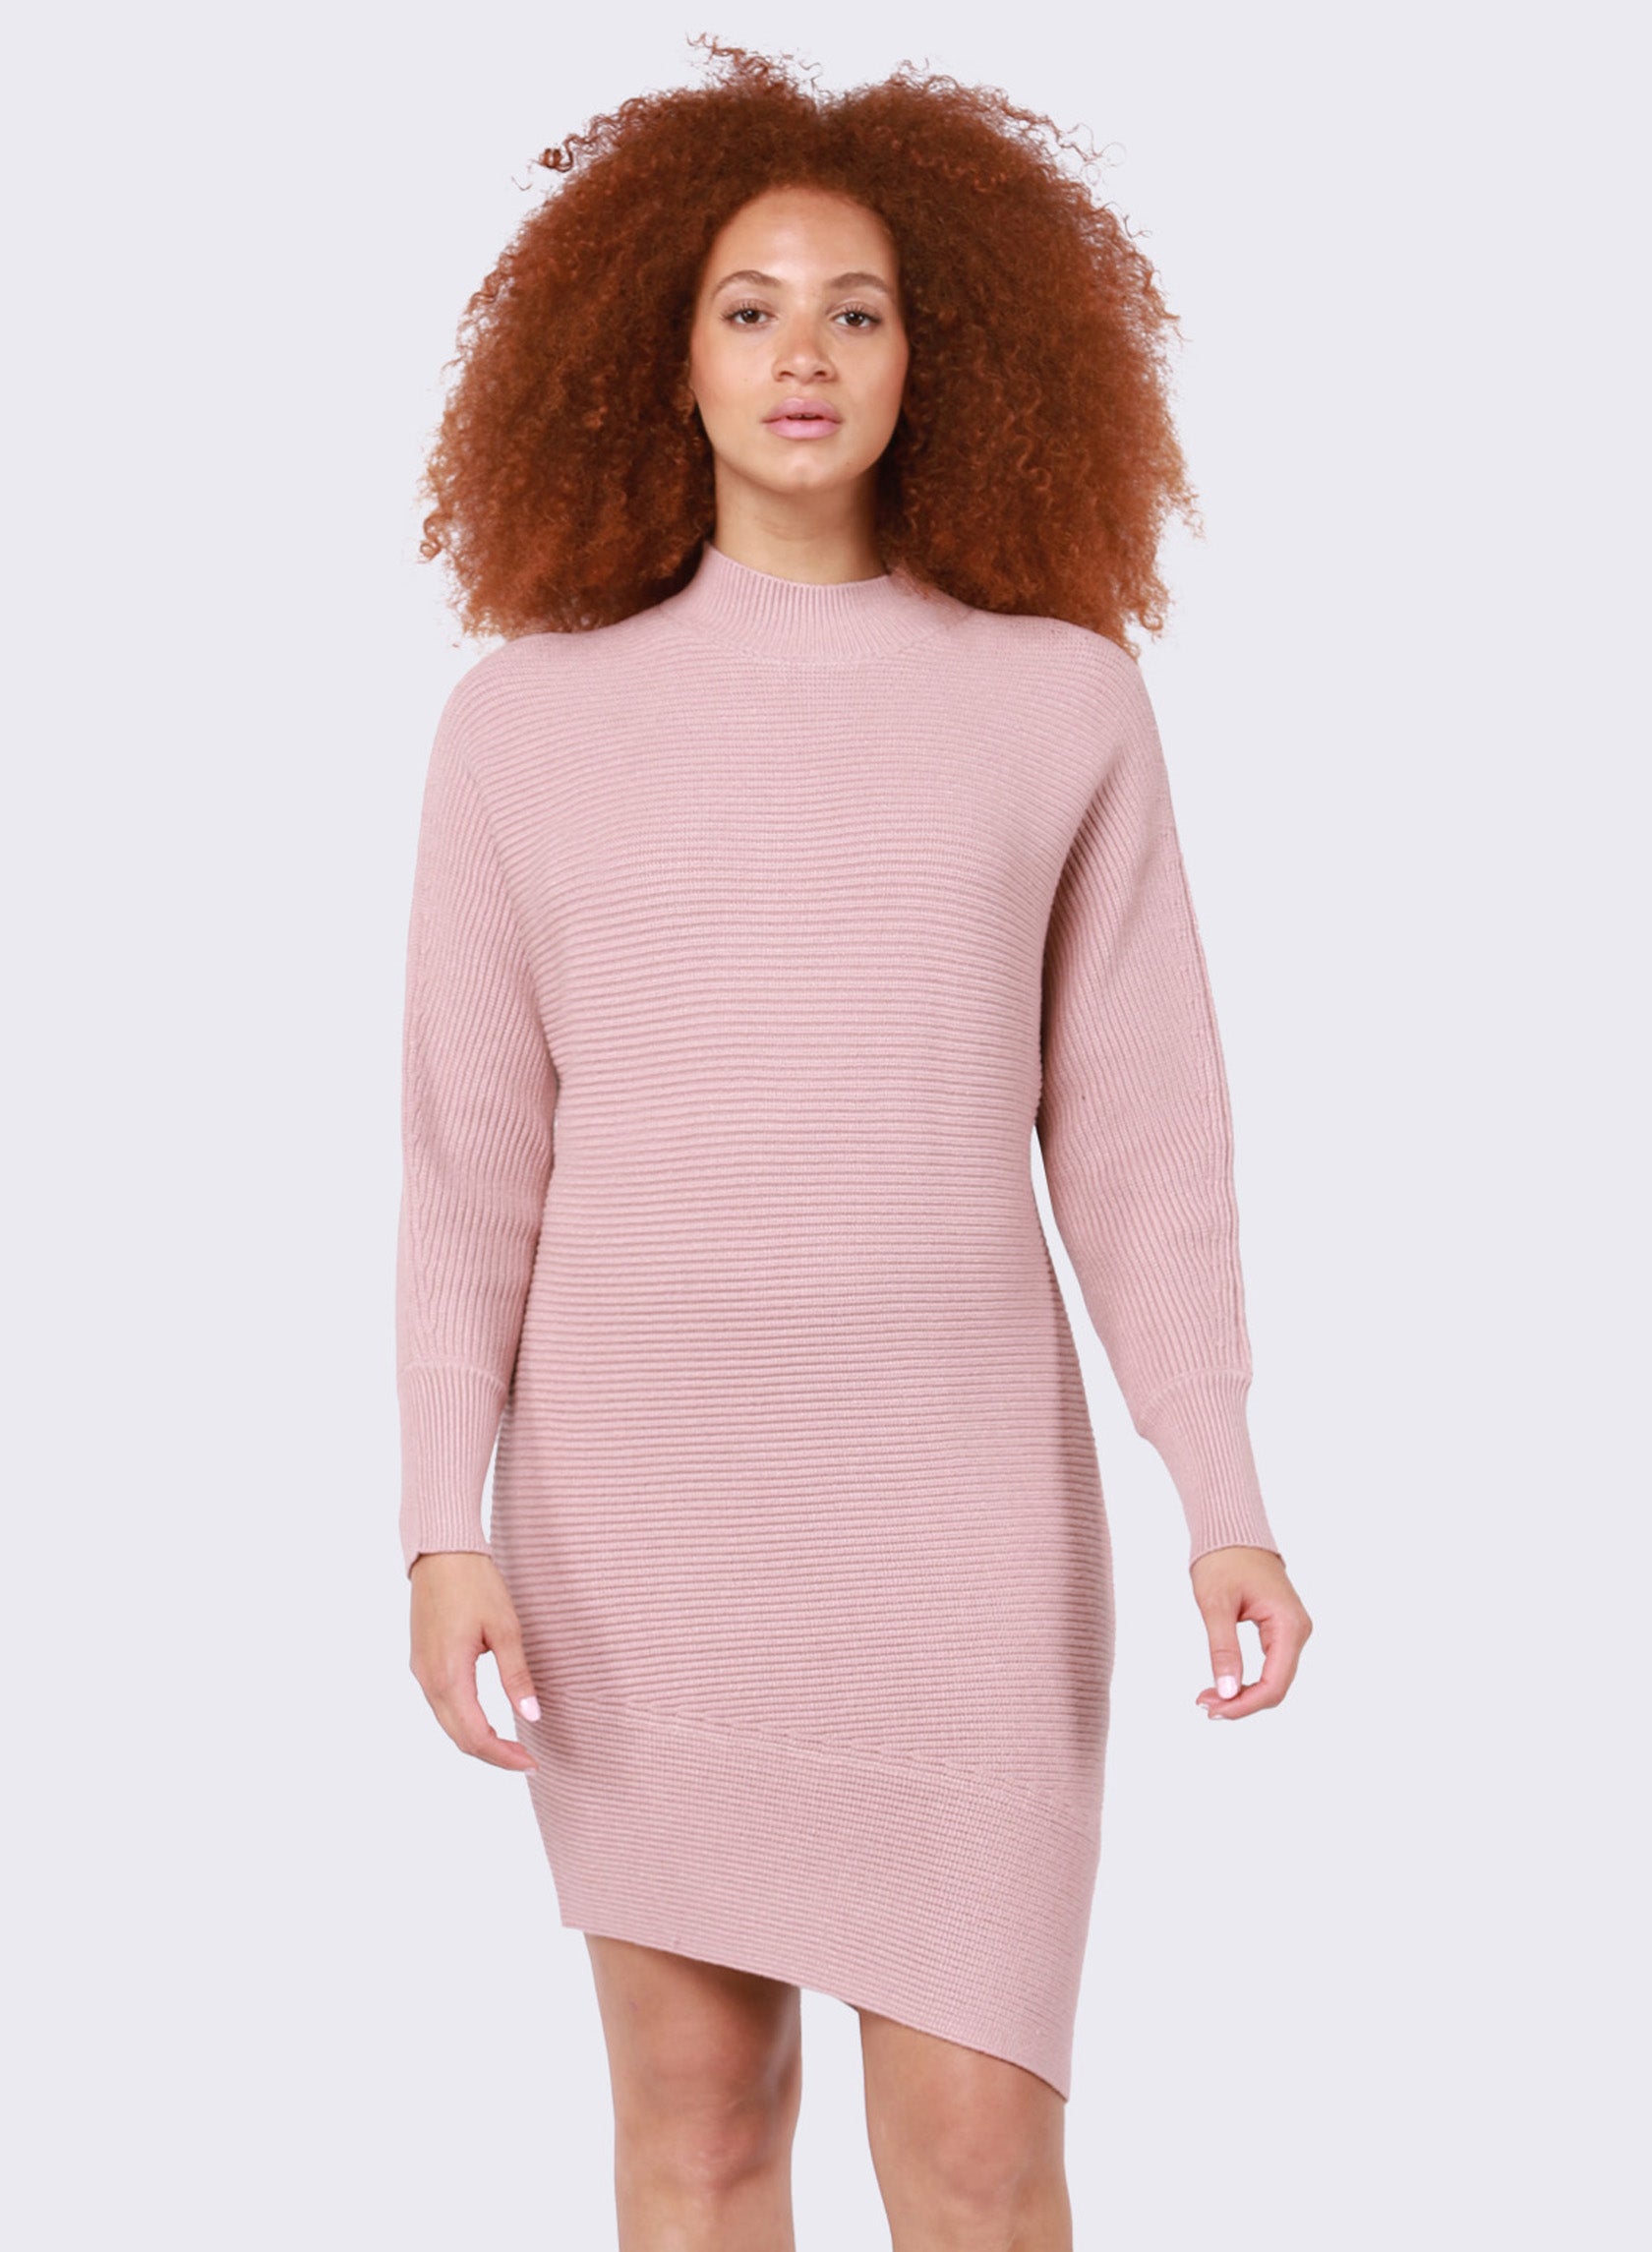 A Little Edge Asymmetrical Sweater Dress